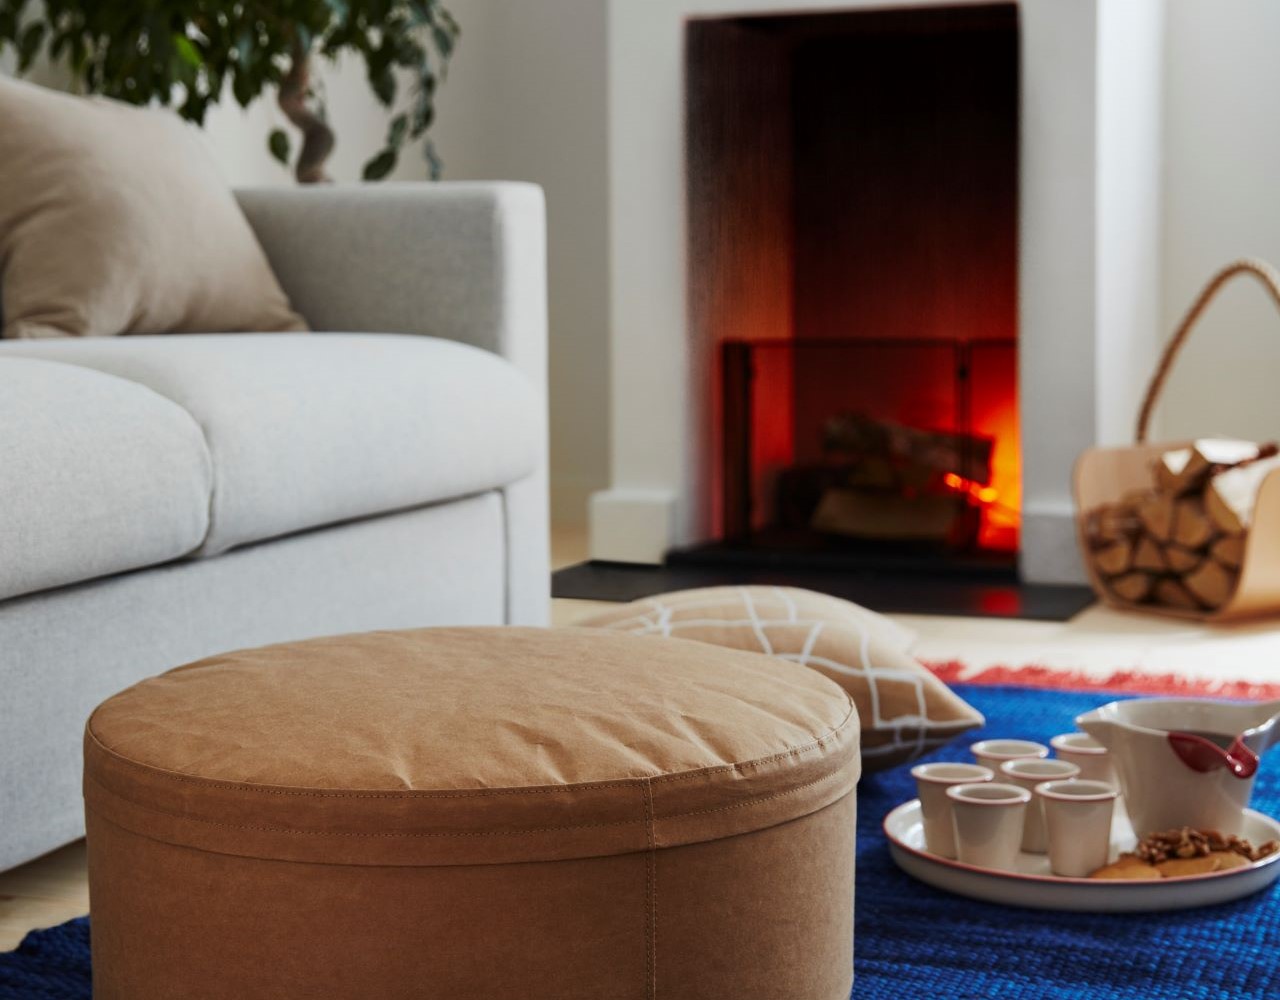 Λίγο πριν τις γιορτές, κάνε το σπίτι σου πιο ζεστό και φιλόξενο με τη νέα συλλεκτική σειρά VÄRMER από την IKEA